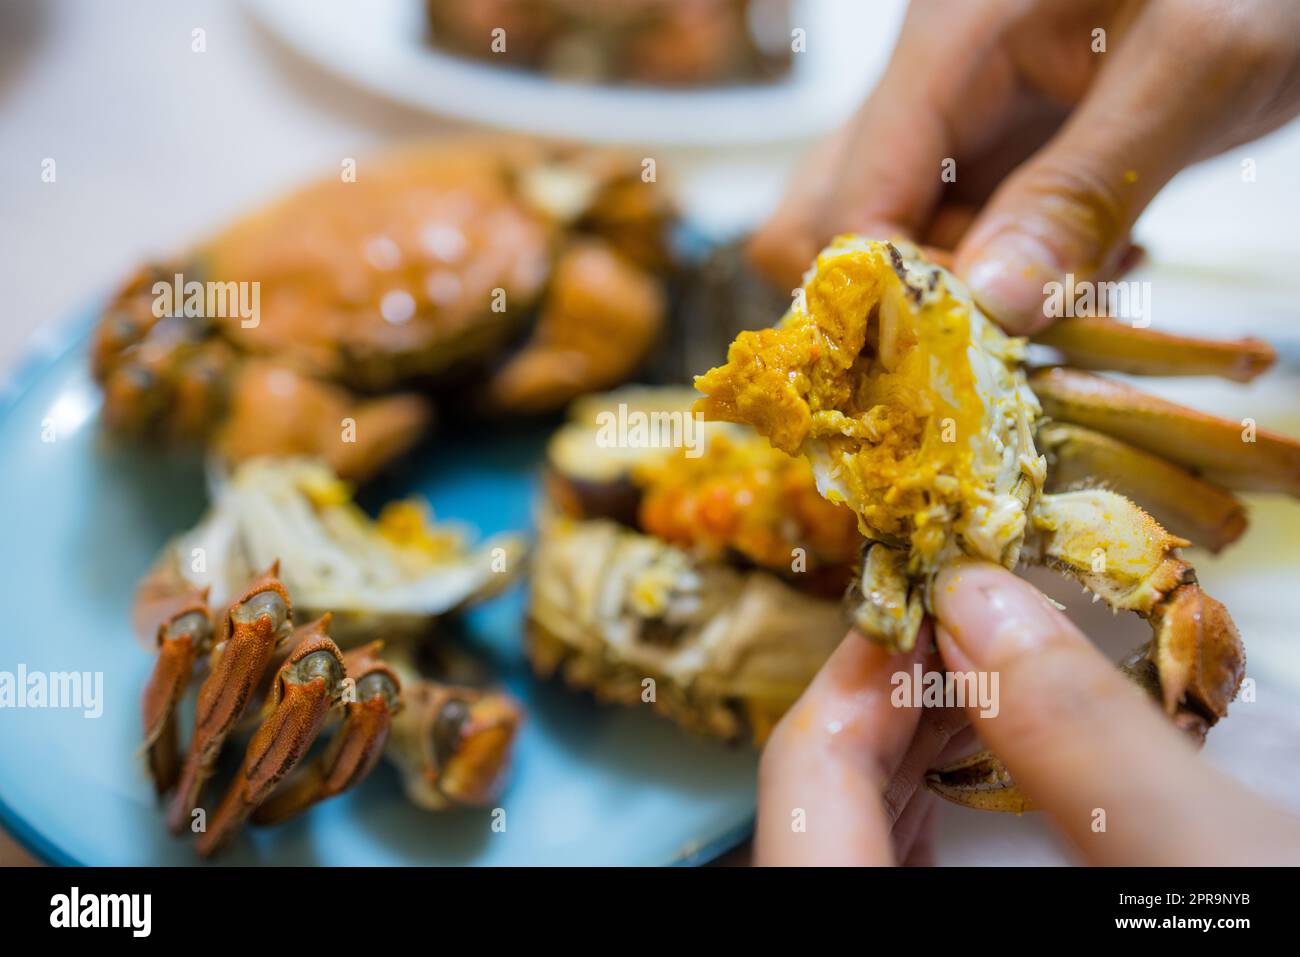 Mangez du crabe poilu chinois chez vous Banque D'Images